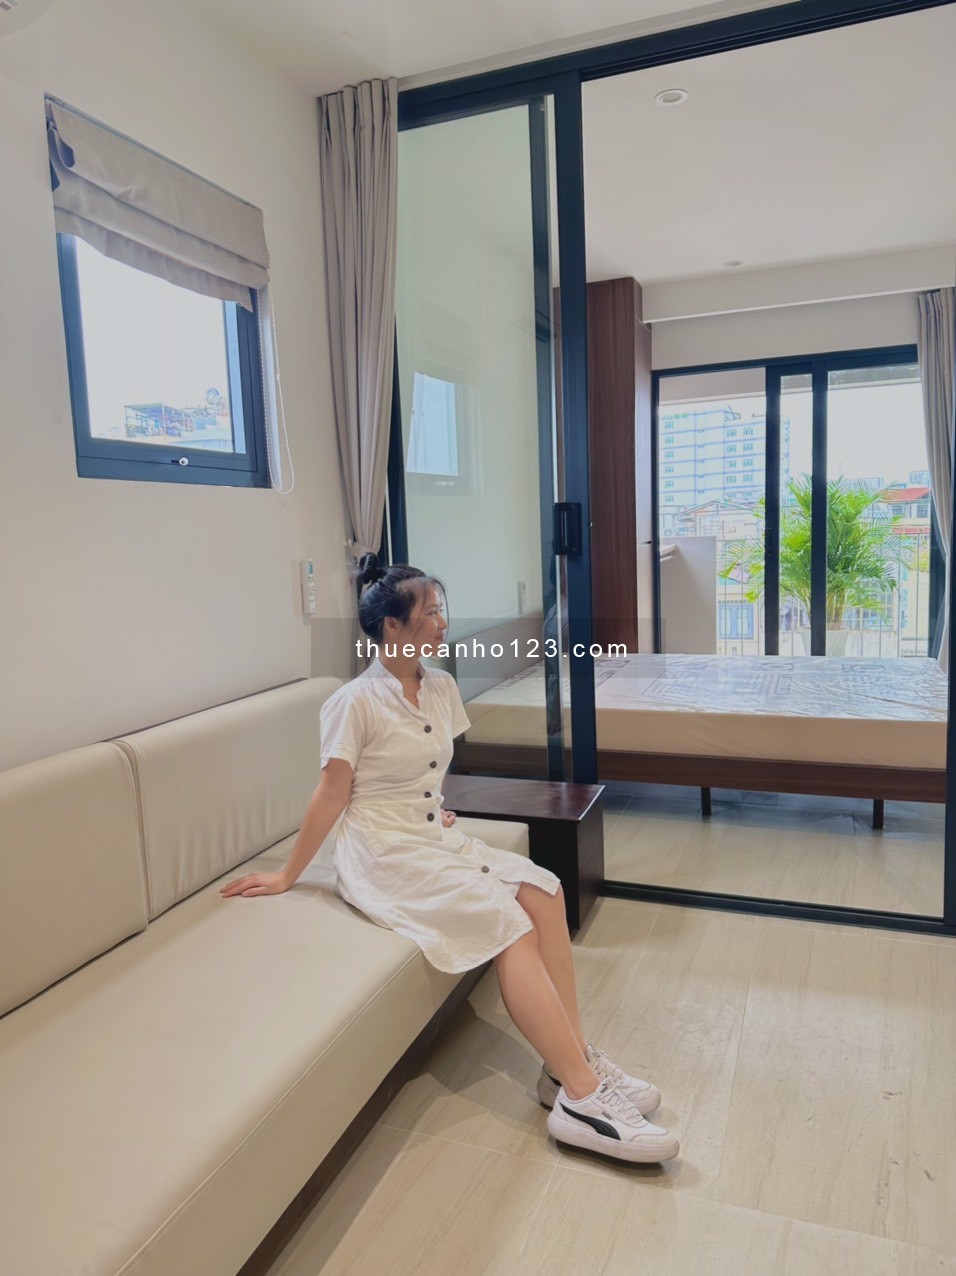 Khai trương căn hộ mới 1 pn balcon luxury ngay cầu Kiệu chợ Tân Định